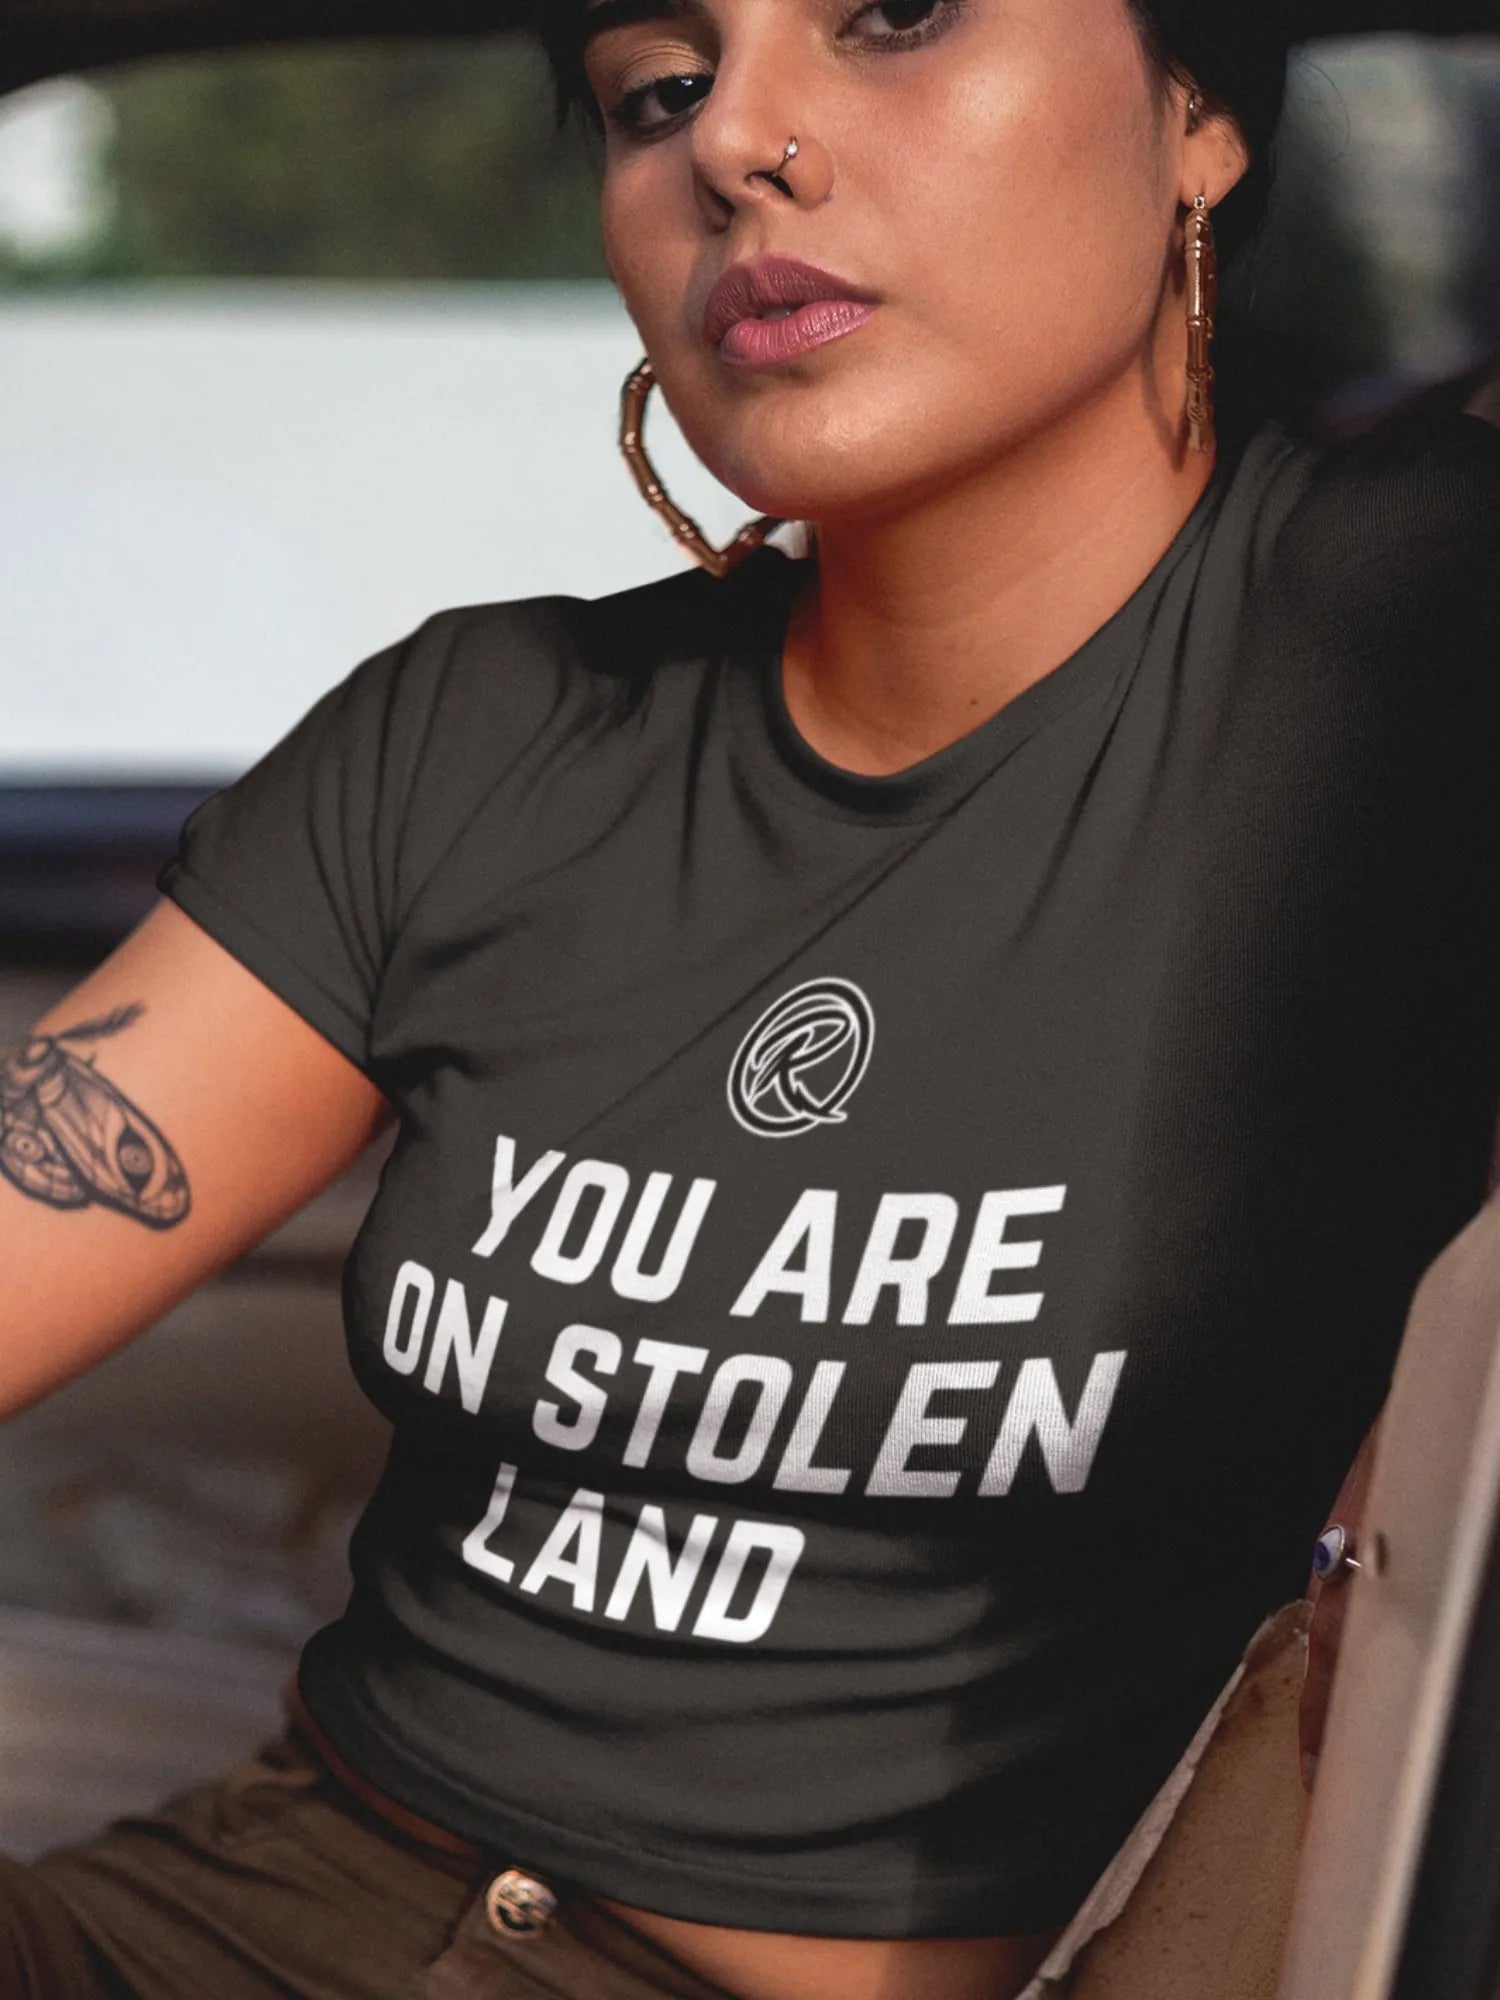 Stolen Land T-shirt